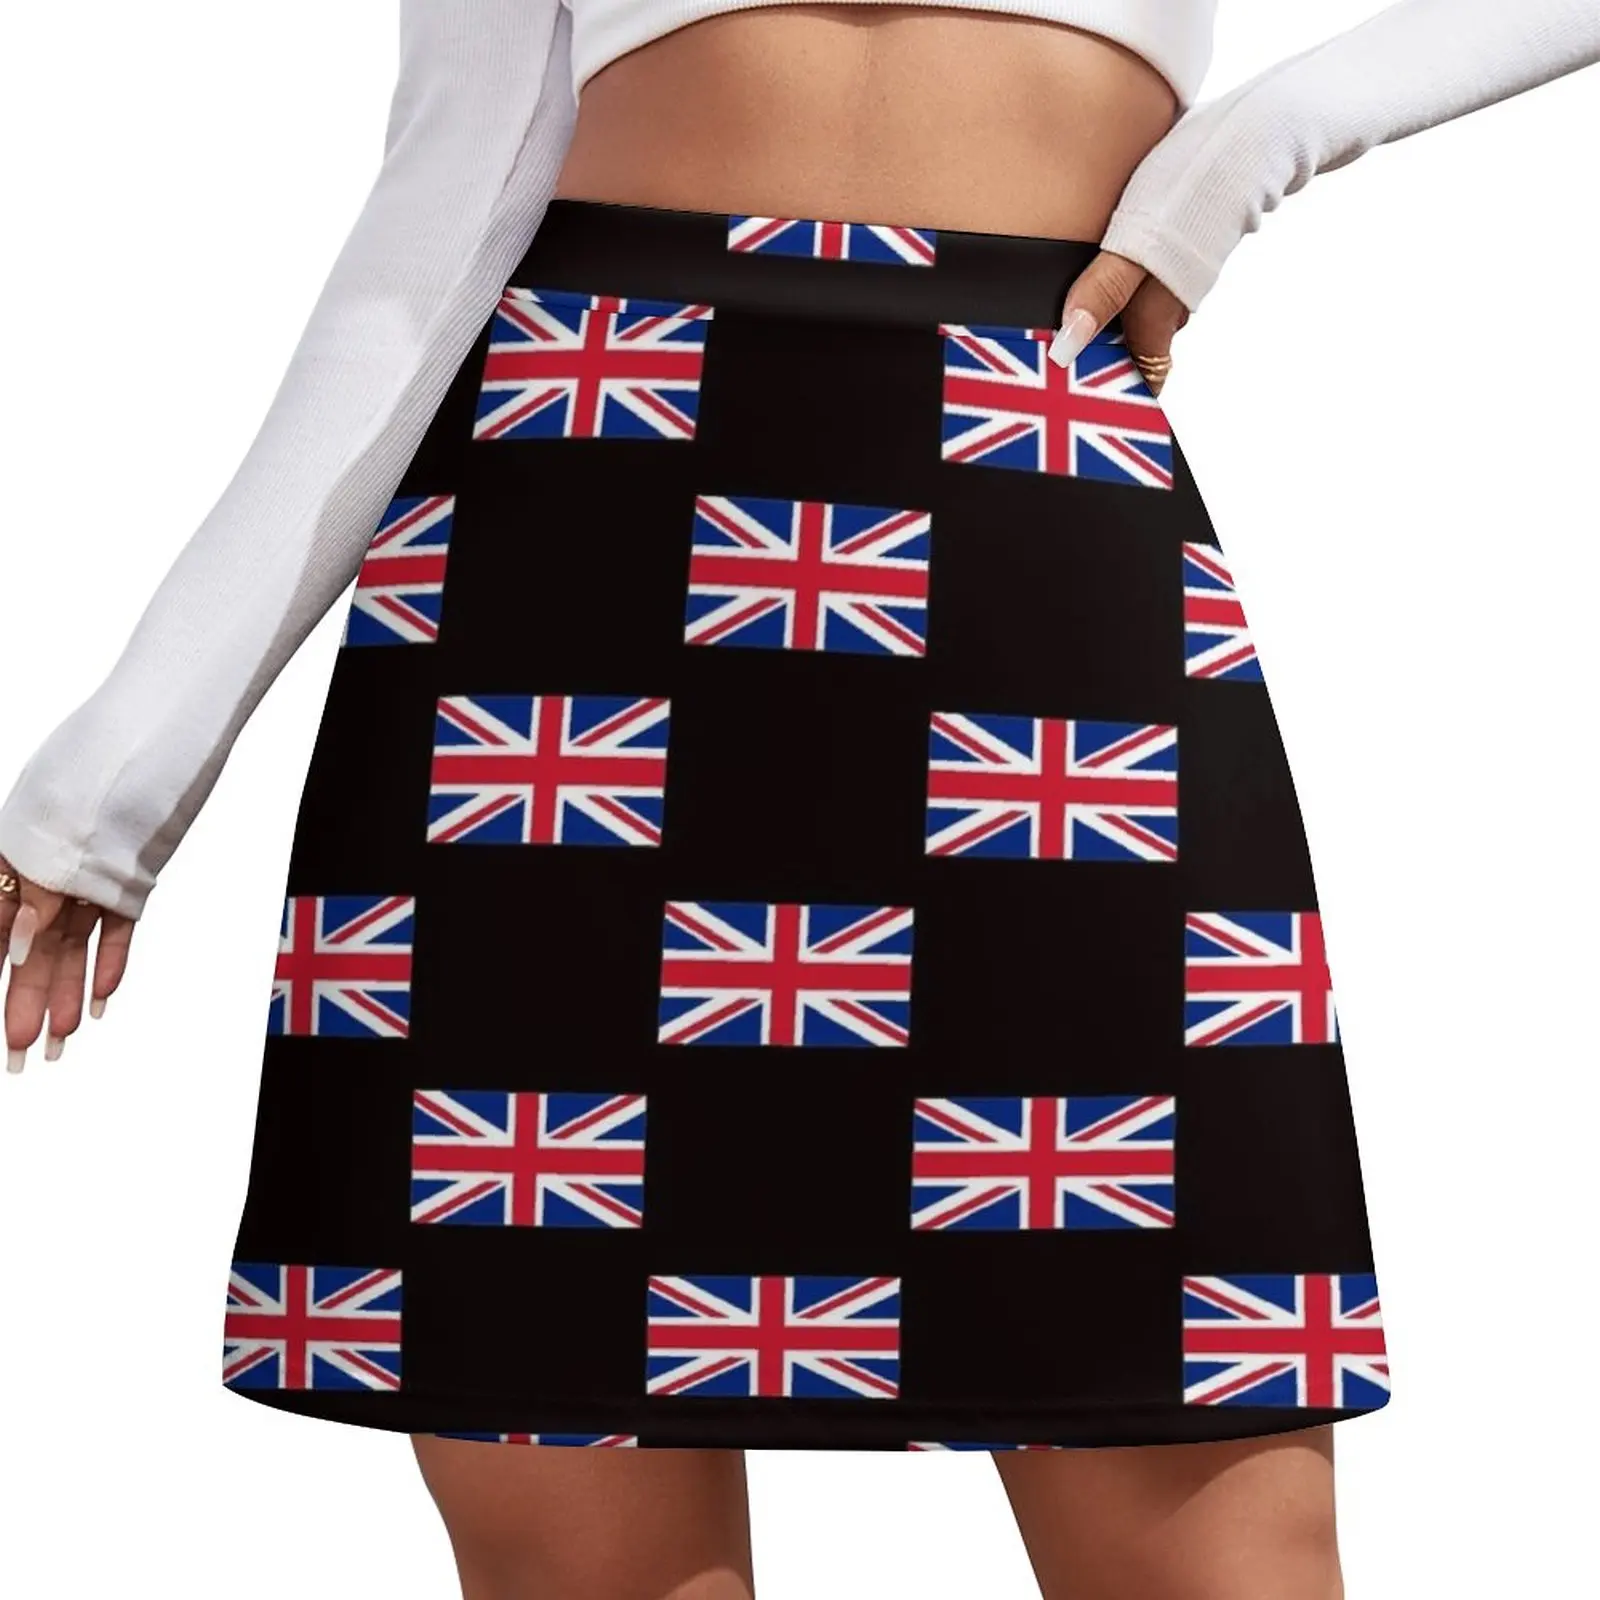 

United Kingdom Flag - Union Jack T-Shirt Mini Skirt skirt skirt Women's summer dress sets